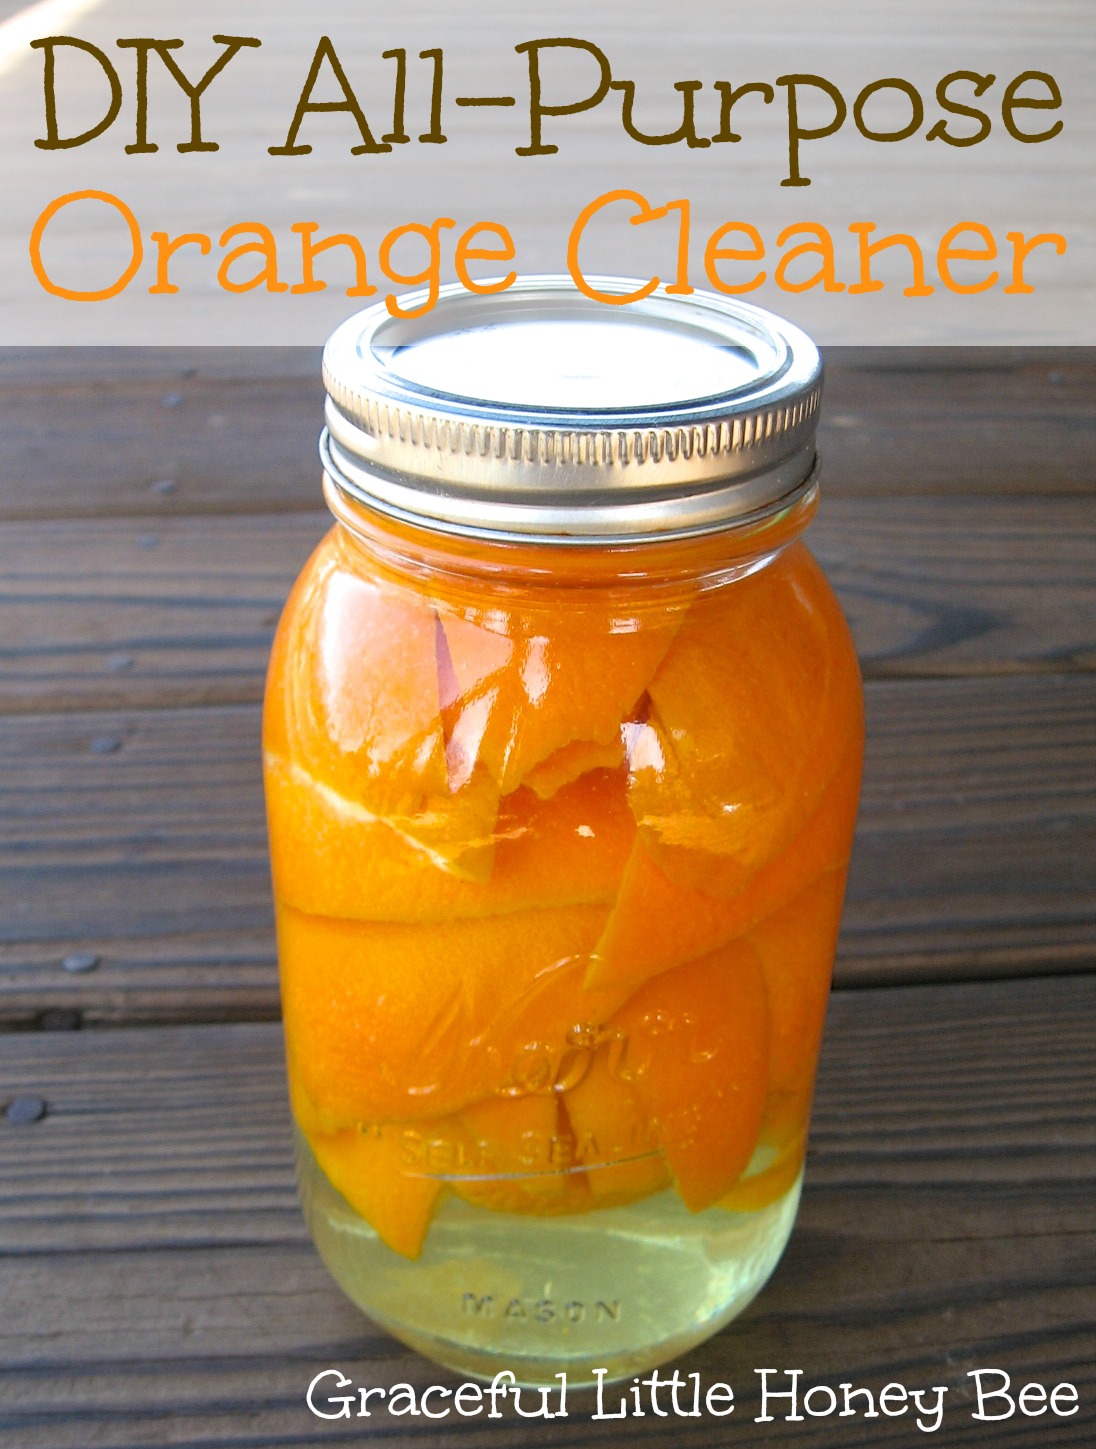 DIY All-Purpose Orange Cleaner